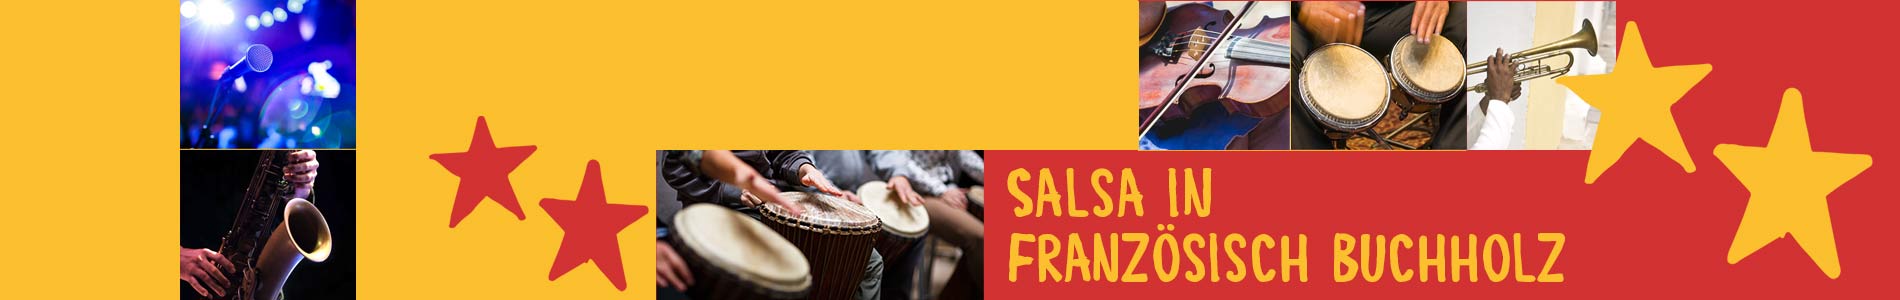 Salsa in Französisch Buchholz – Salsa lernen und tanzen, Tanzkurse, Partys, Veranstaltungen